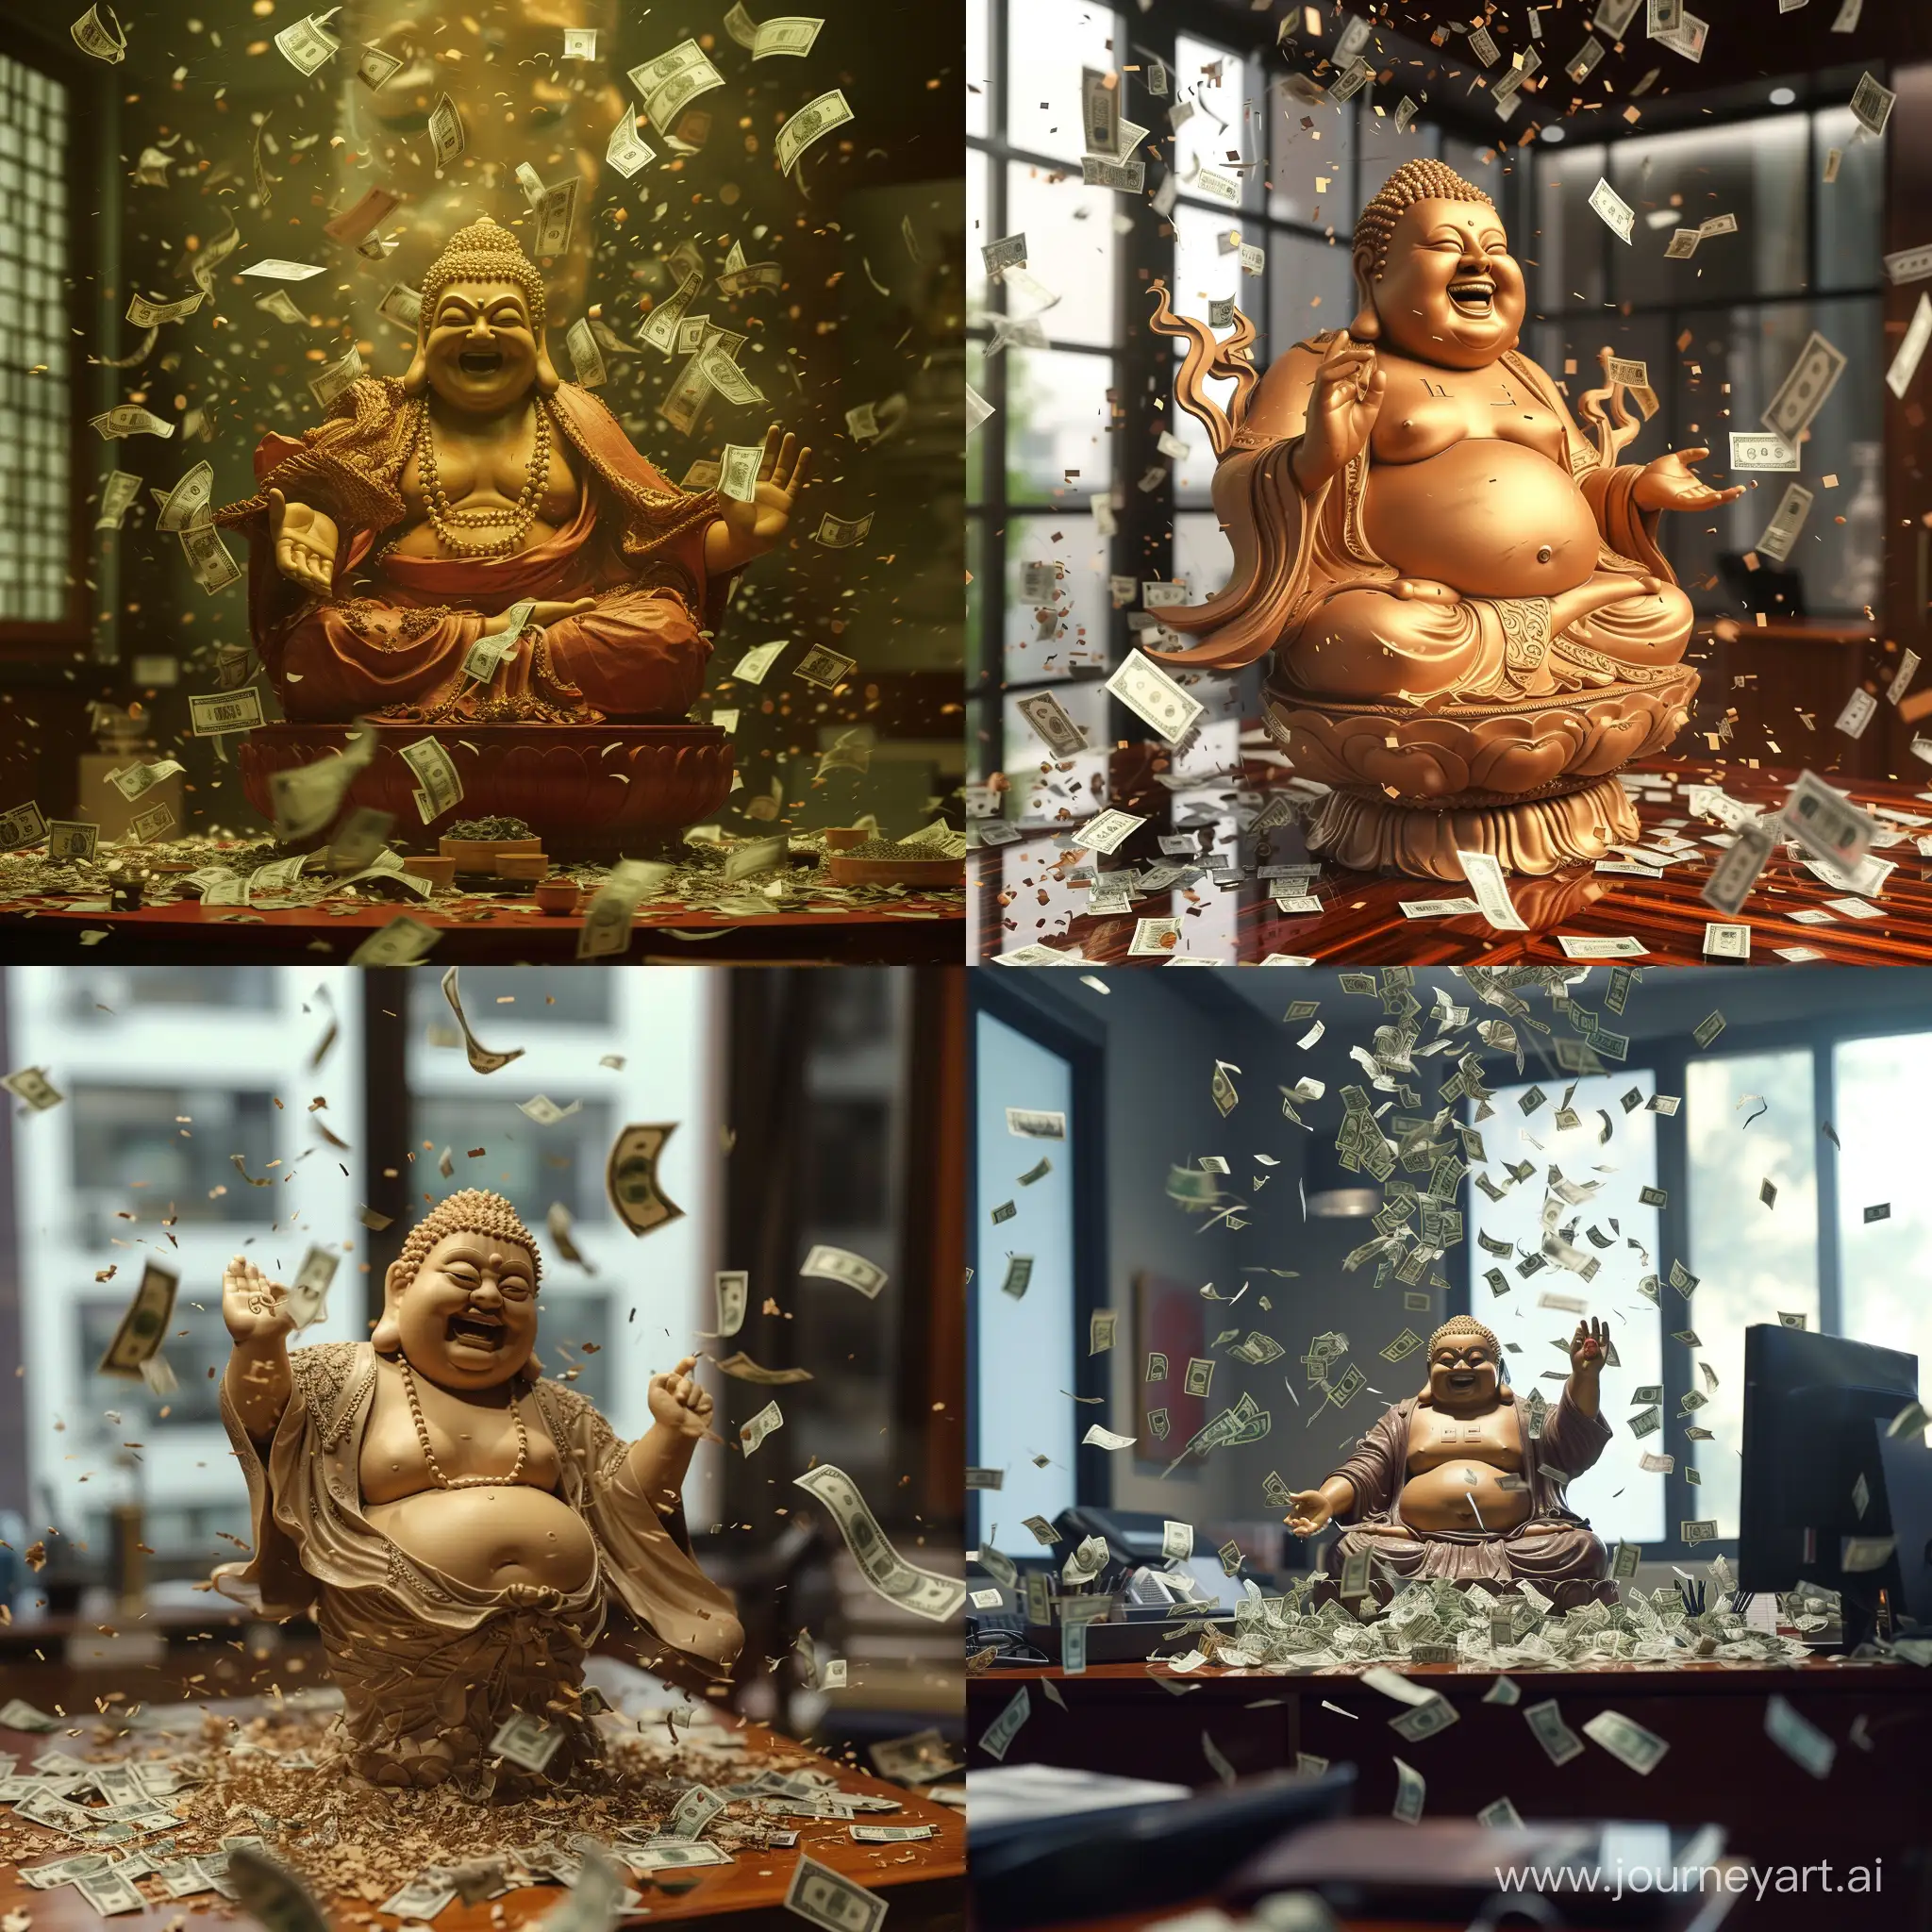 Maitreya-Buddha-Image-Amidst-Boisterous-Office-Scene-with-Money-Flying-Everywhere